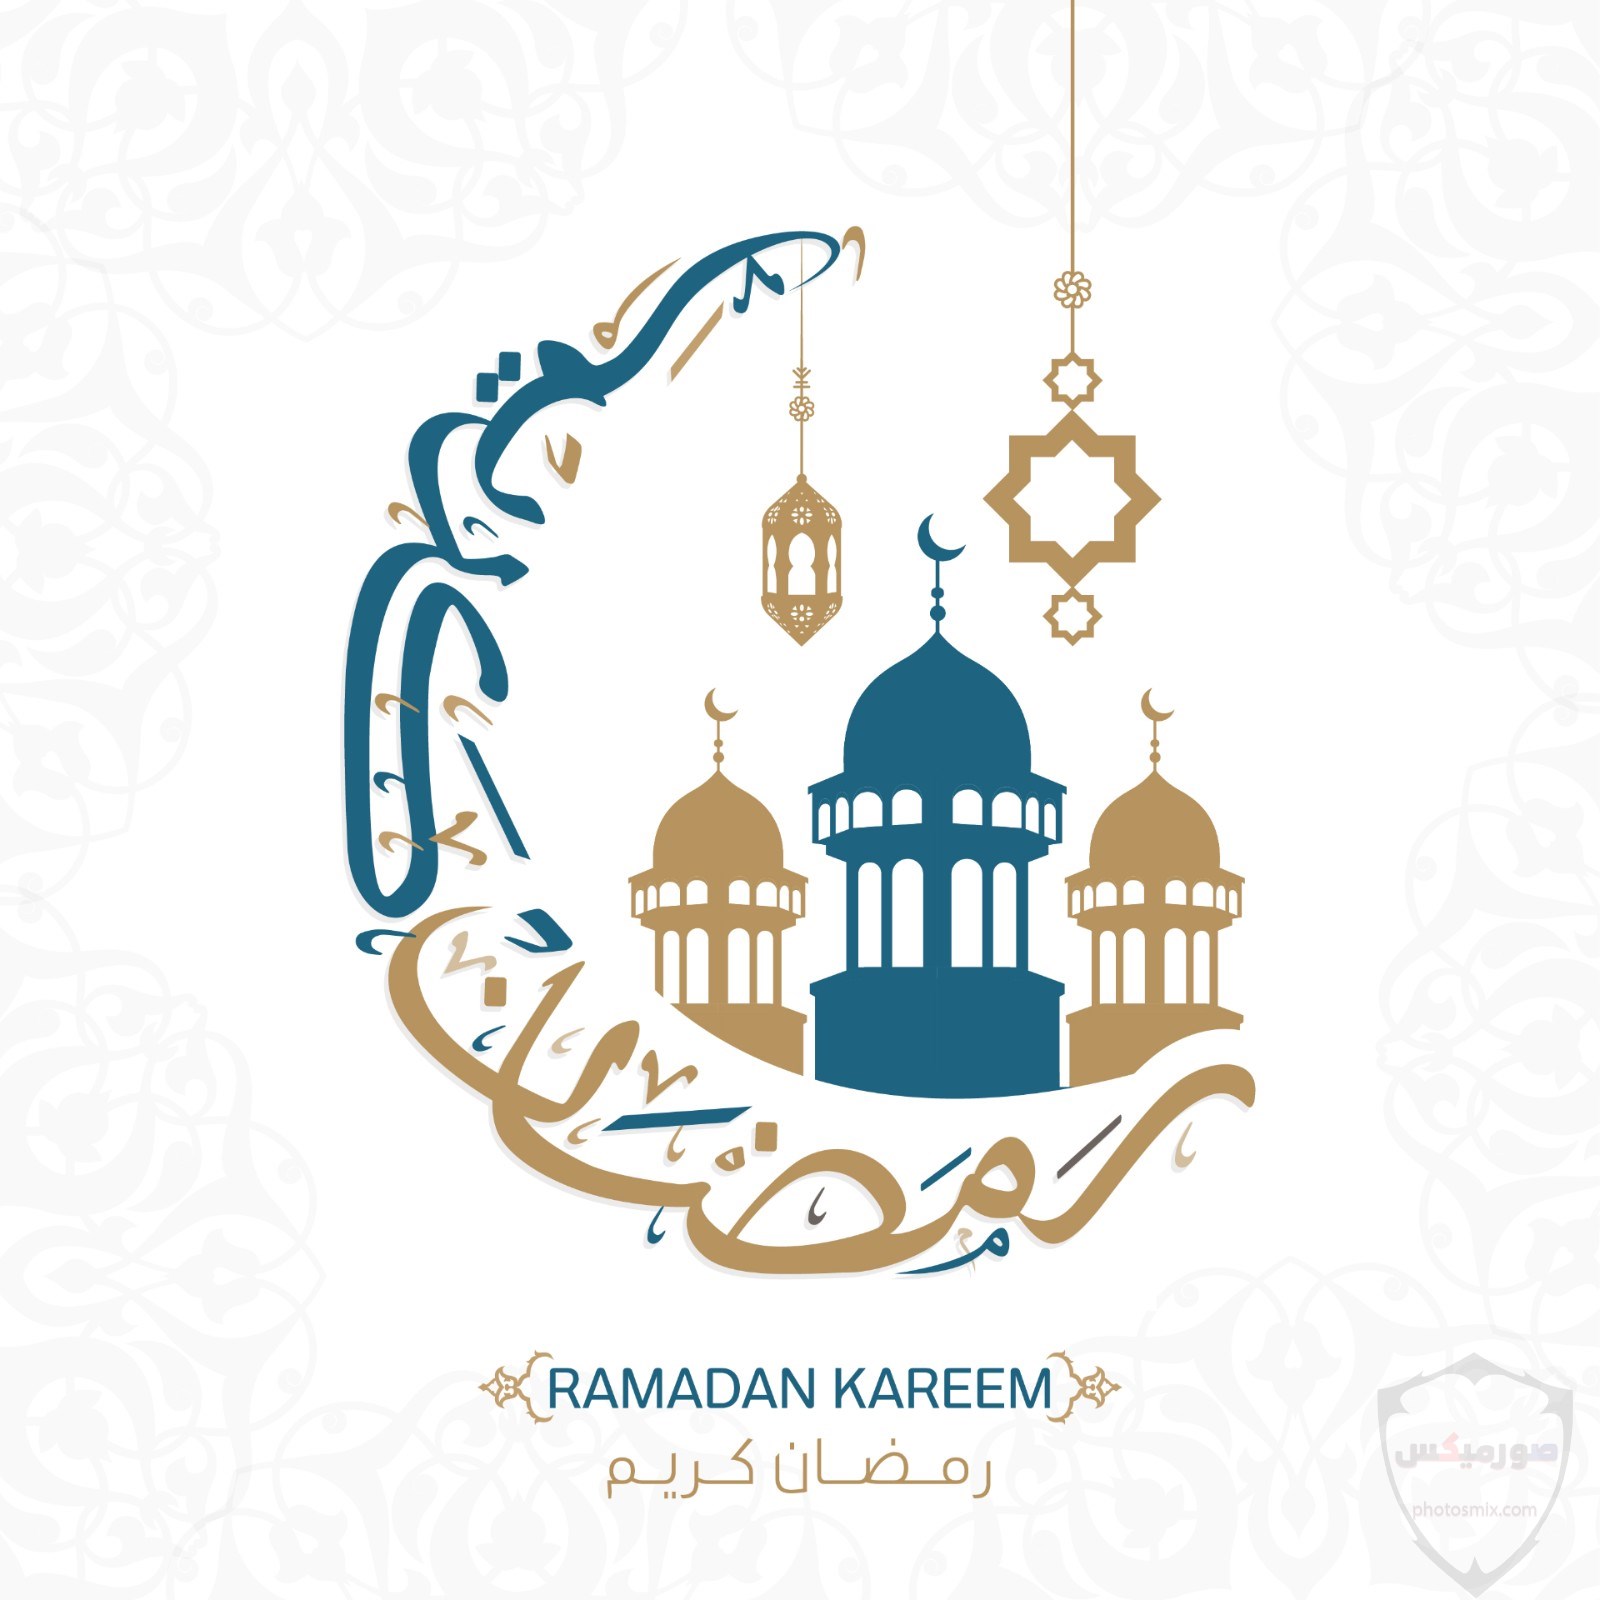 صور رمضان 2020 خلفيات صور رمضان 2020 9 1